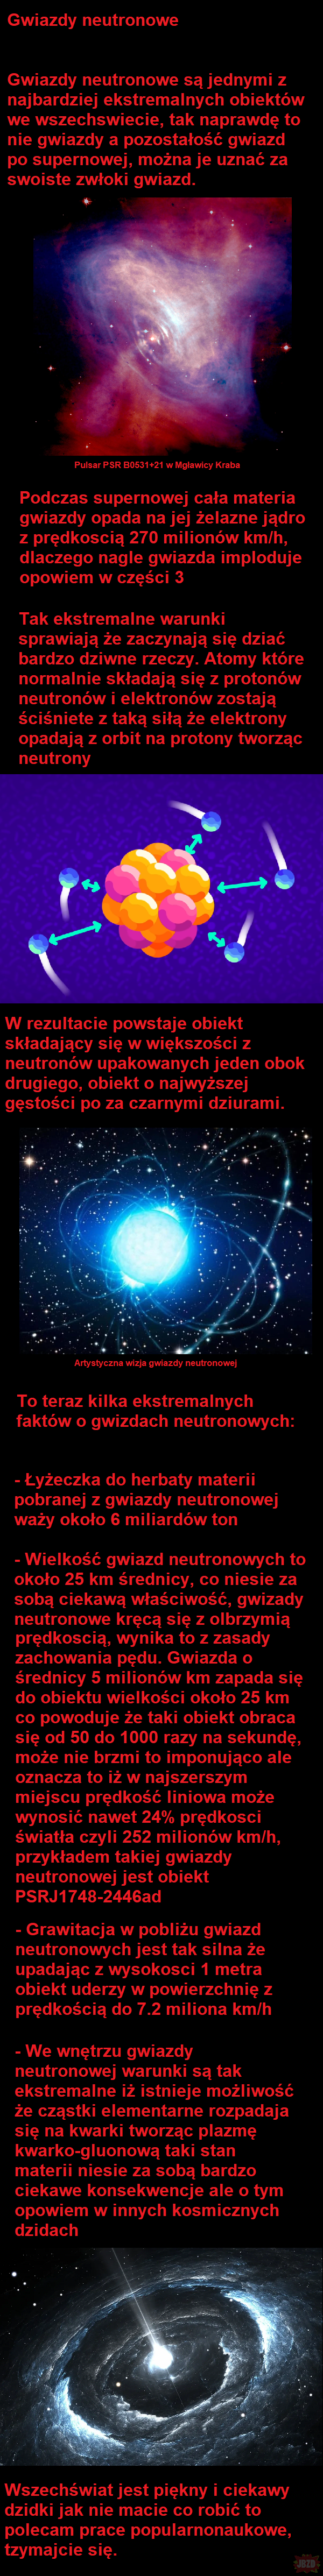 Kosmiczna Dzida #2 Gwiazdy neutronowe